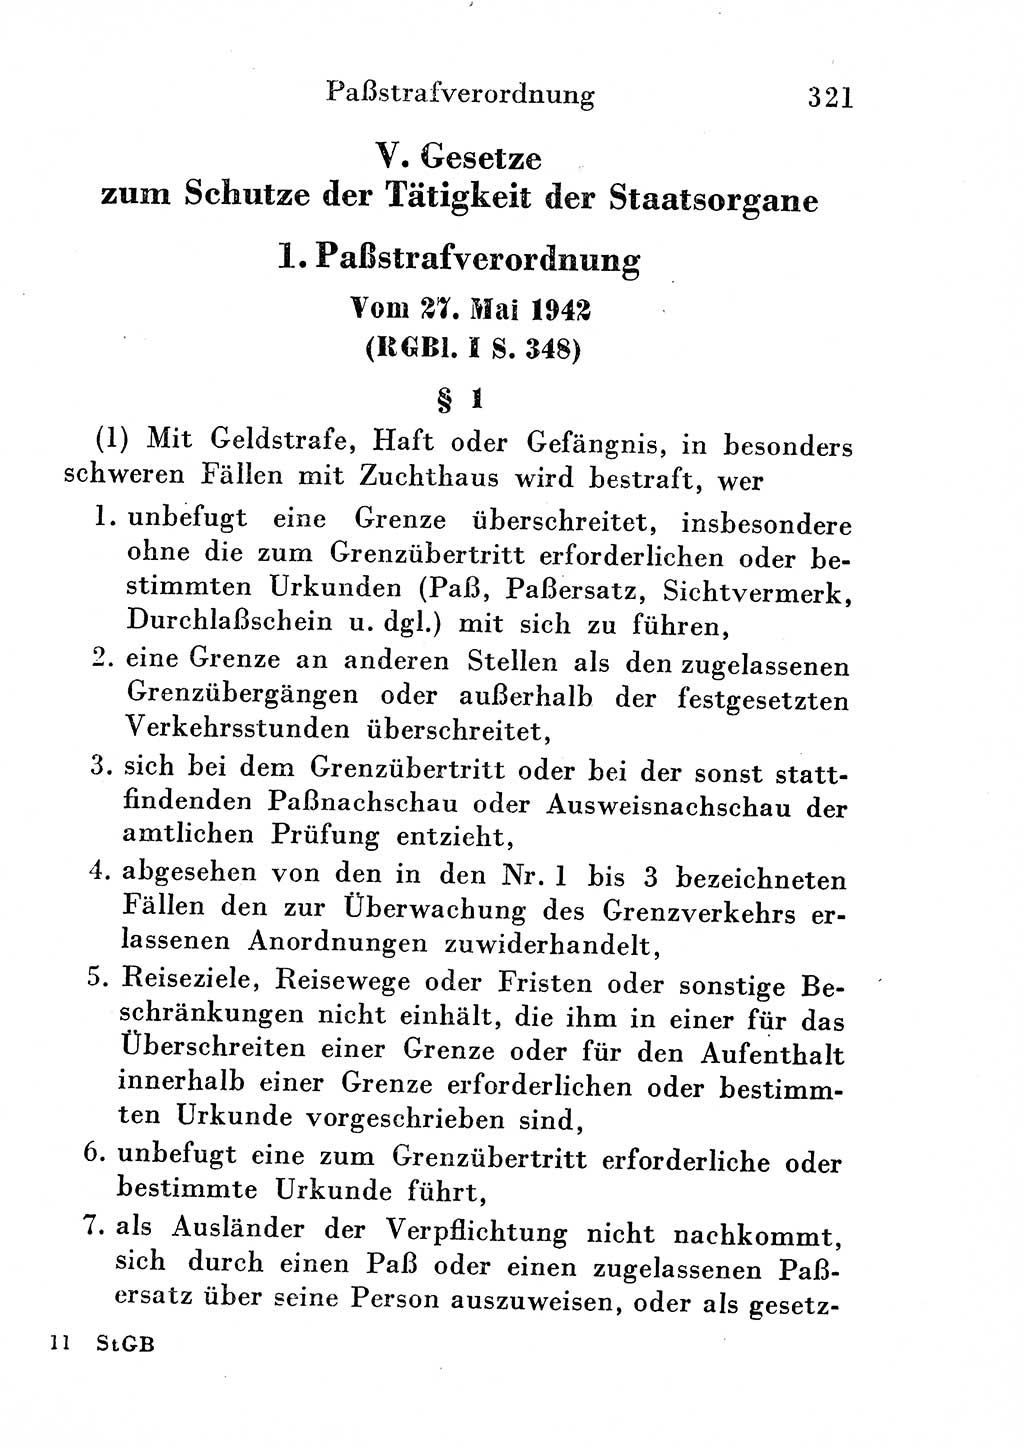 Strafgesetzbuch (StGB) und andere Strafgesetze [Deutsche Demokratische Republik (DDR)] 1954, Seite 321 (StGB Strafges. DDR 1954, S. 321)